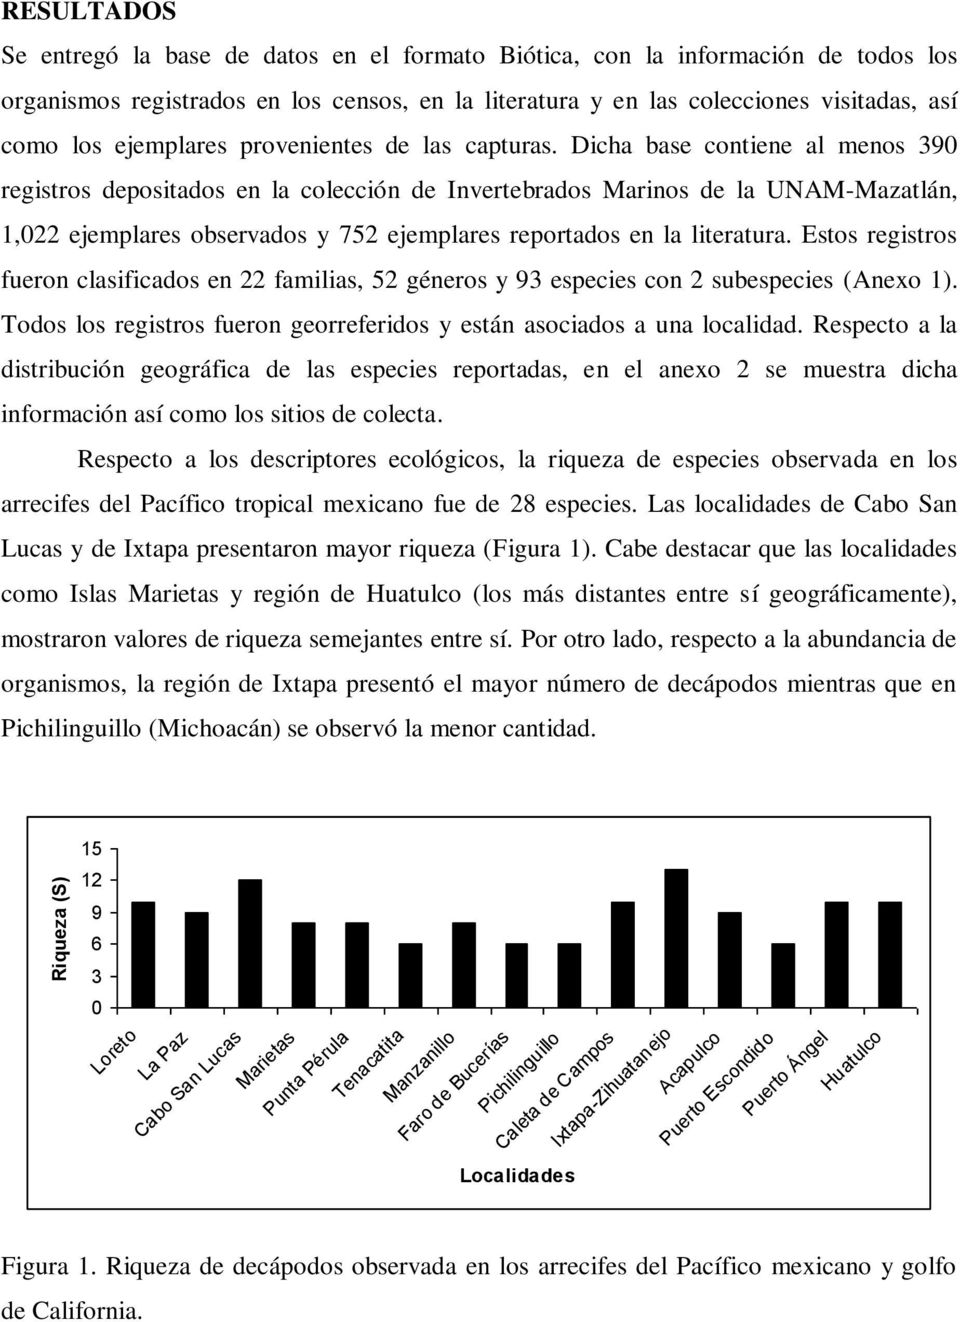 Dicha base contiene al menos 390 registros depositados en la colección de Invertebrados Marinos de la UNAM-Mazatlán, 1,022 ejemplares observados y 752 ejemplares reportados en la literatura.